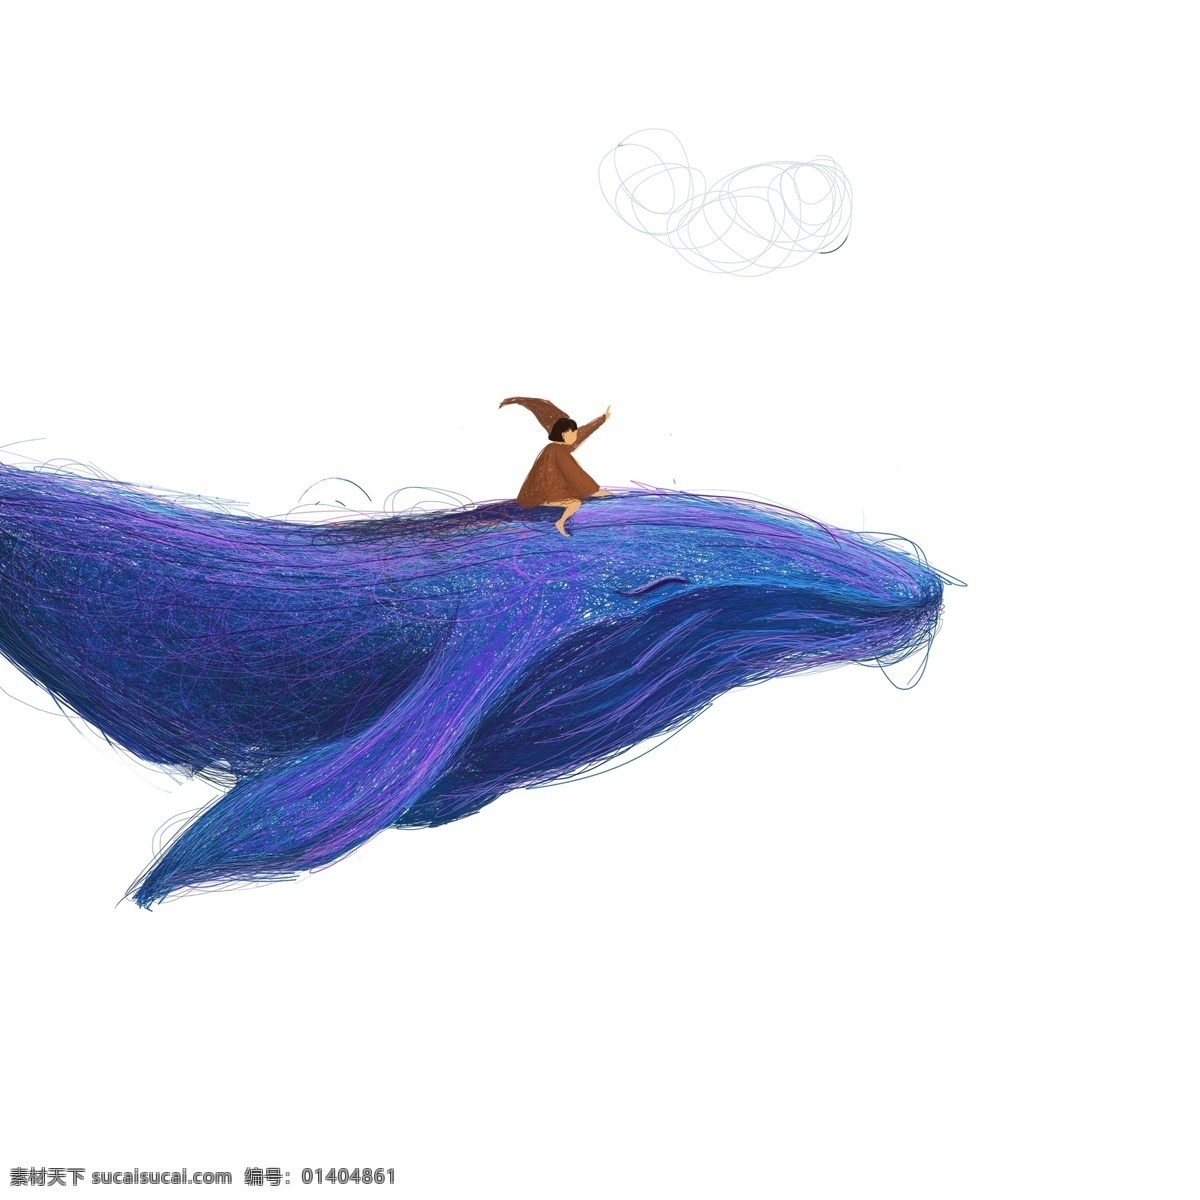 坐在 鲸鱼 头上 男孩 卡通鲸鱼 童话人物 蓝色鲸鱼 童话动物 卡通插图 创意卡通下载 插图 png图下载